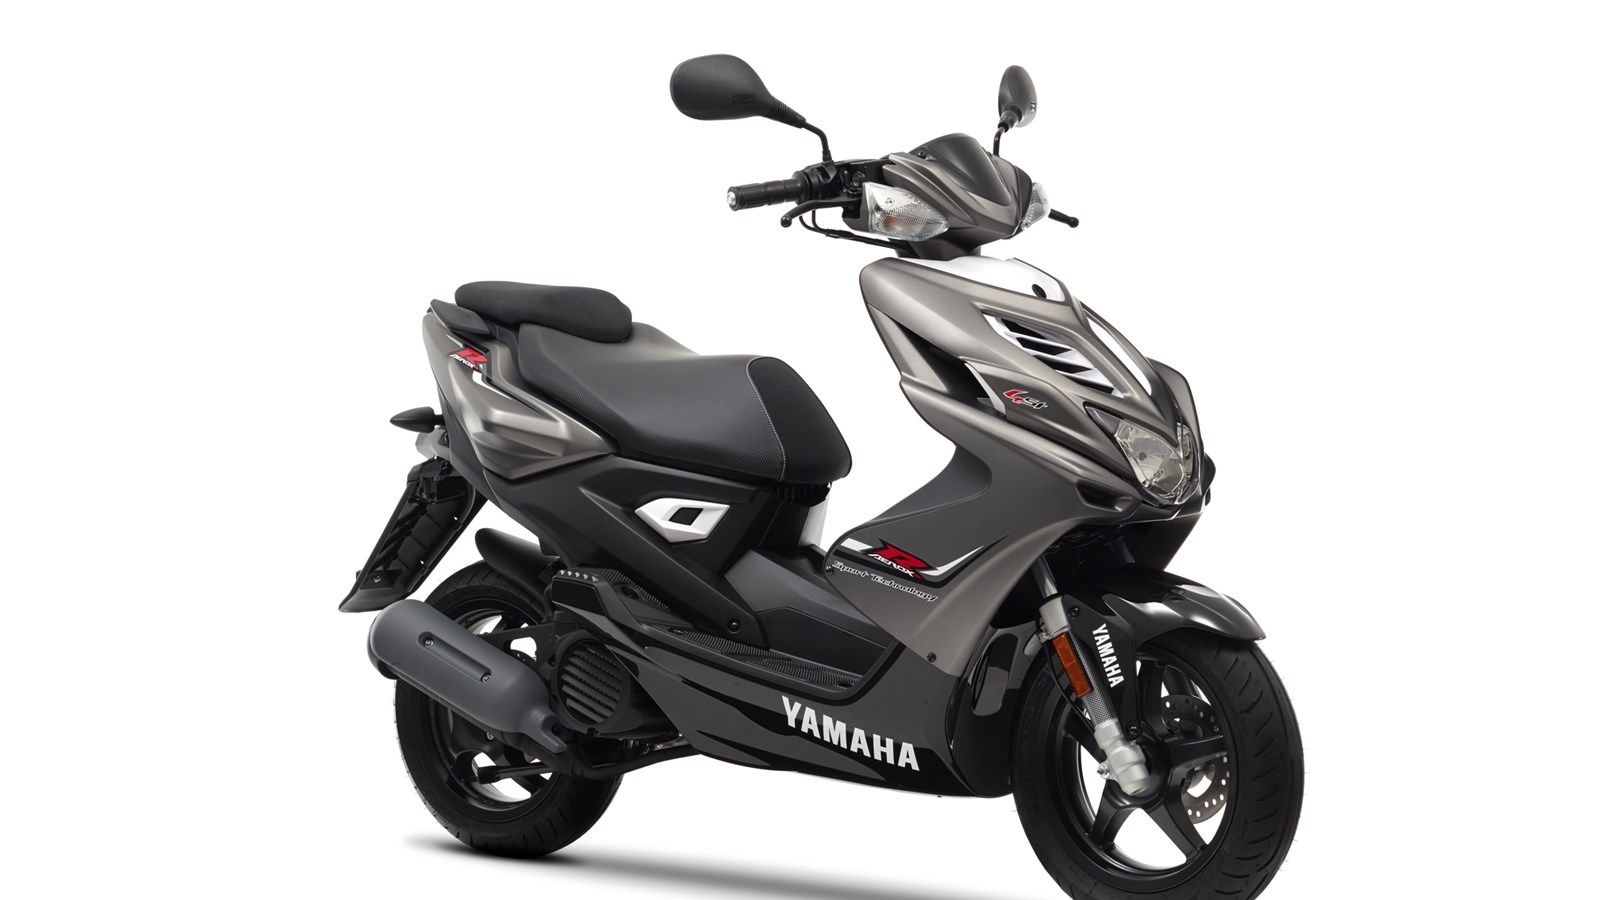 Bezkonkurencyjny, 4-suwowy silnik marki Yamaha! Radykalny, sportowy skuter klasy 50 cm3 zwraca uwagę wszędzie, gdzie się pojawi.